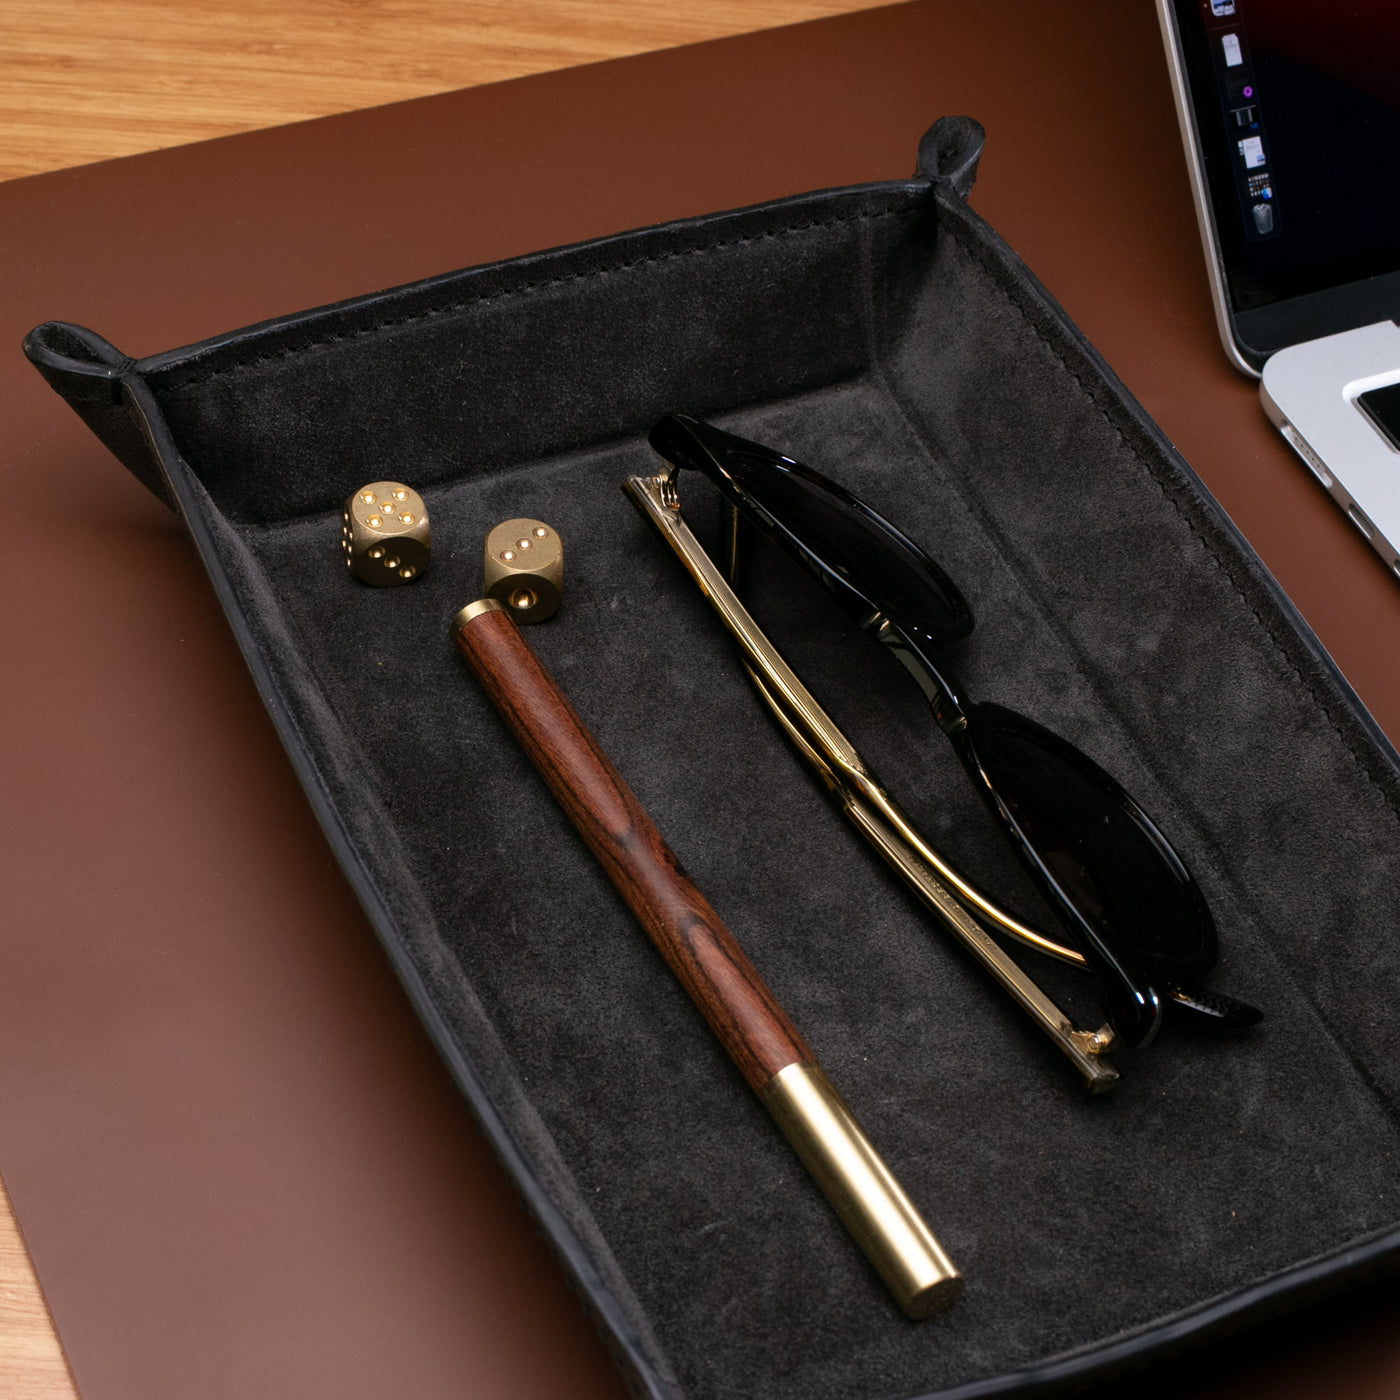 Wooden Brass Gel Pen - Handmade Wooden Pen – Roarcraft